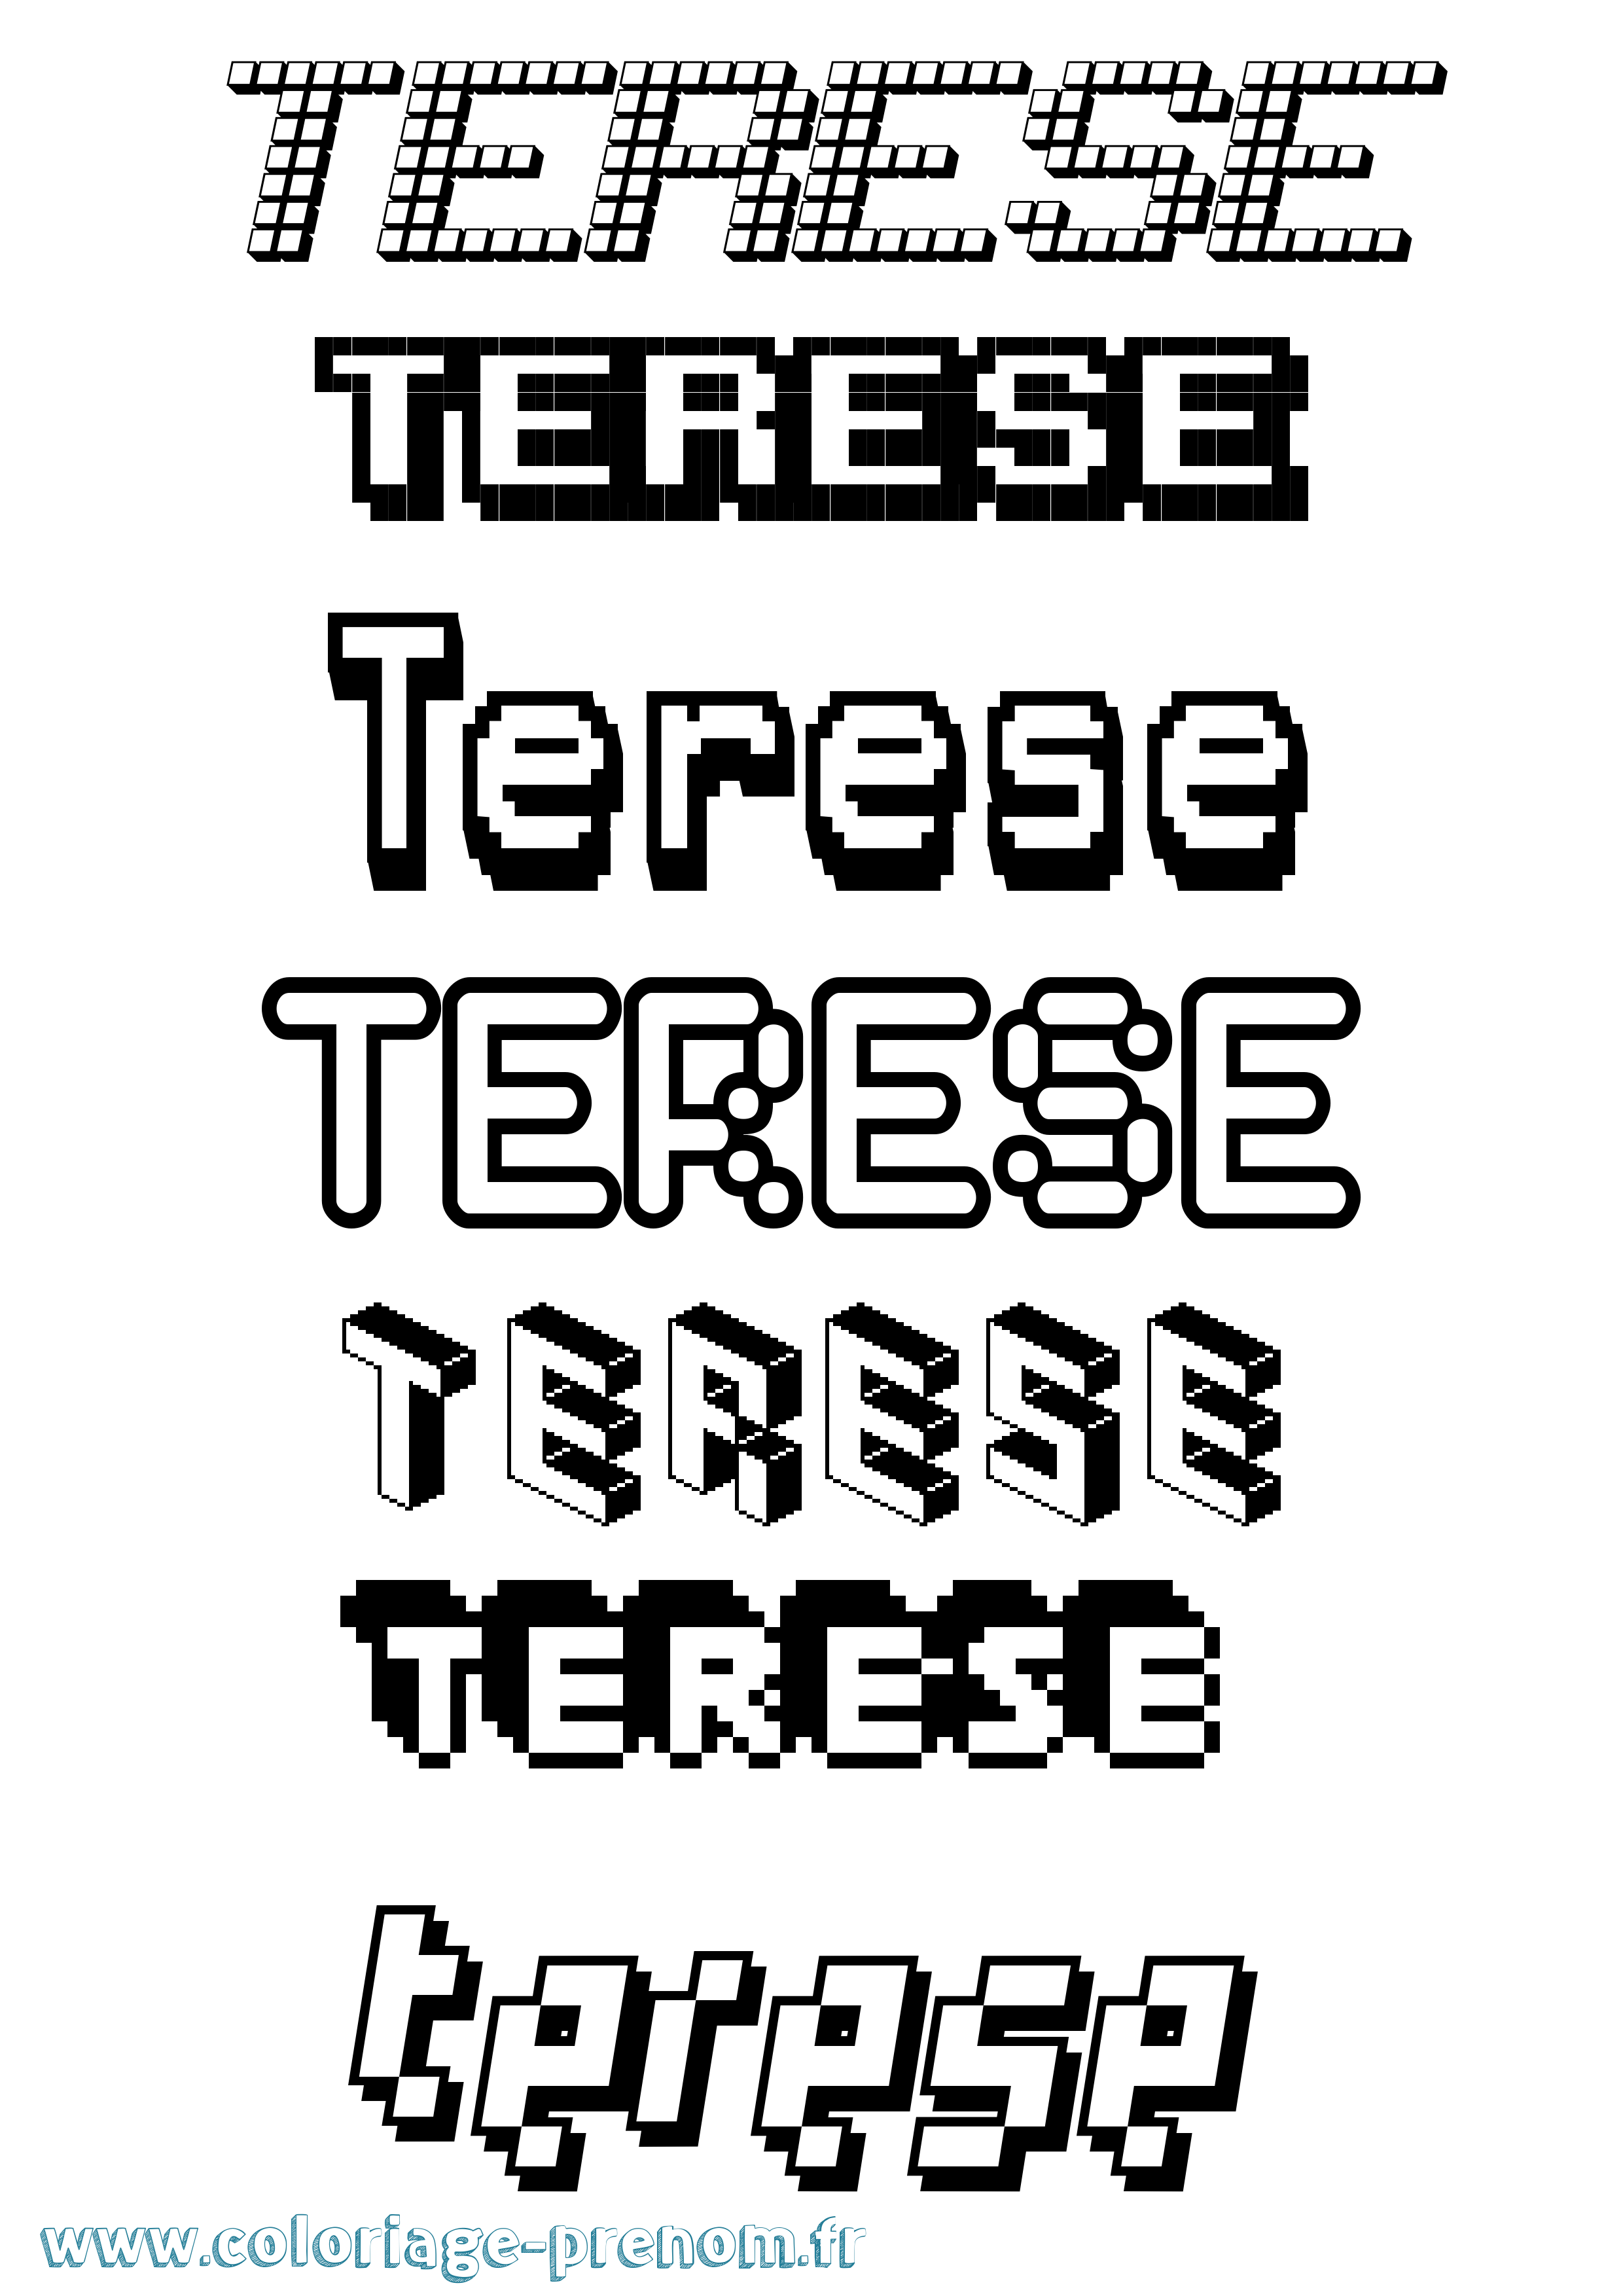 Coloriage prénom Terese Pixel